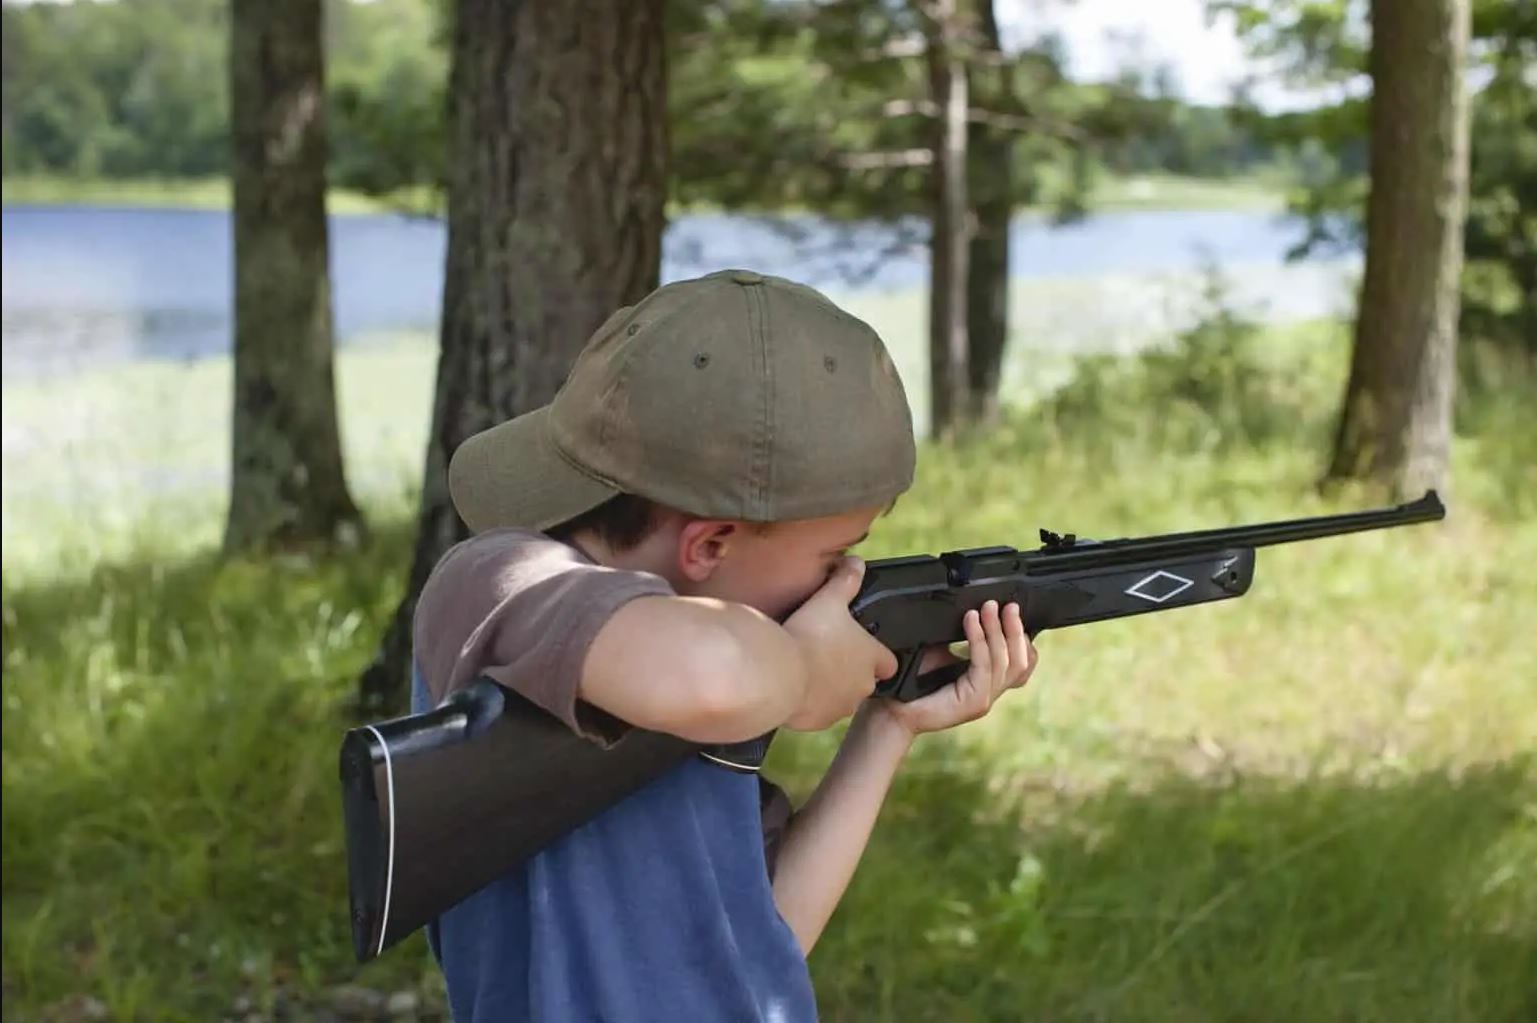 Teaching Kids Gun Safety With BB Guns and Air Rifles